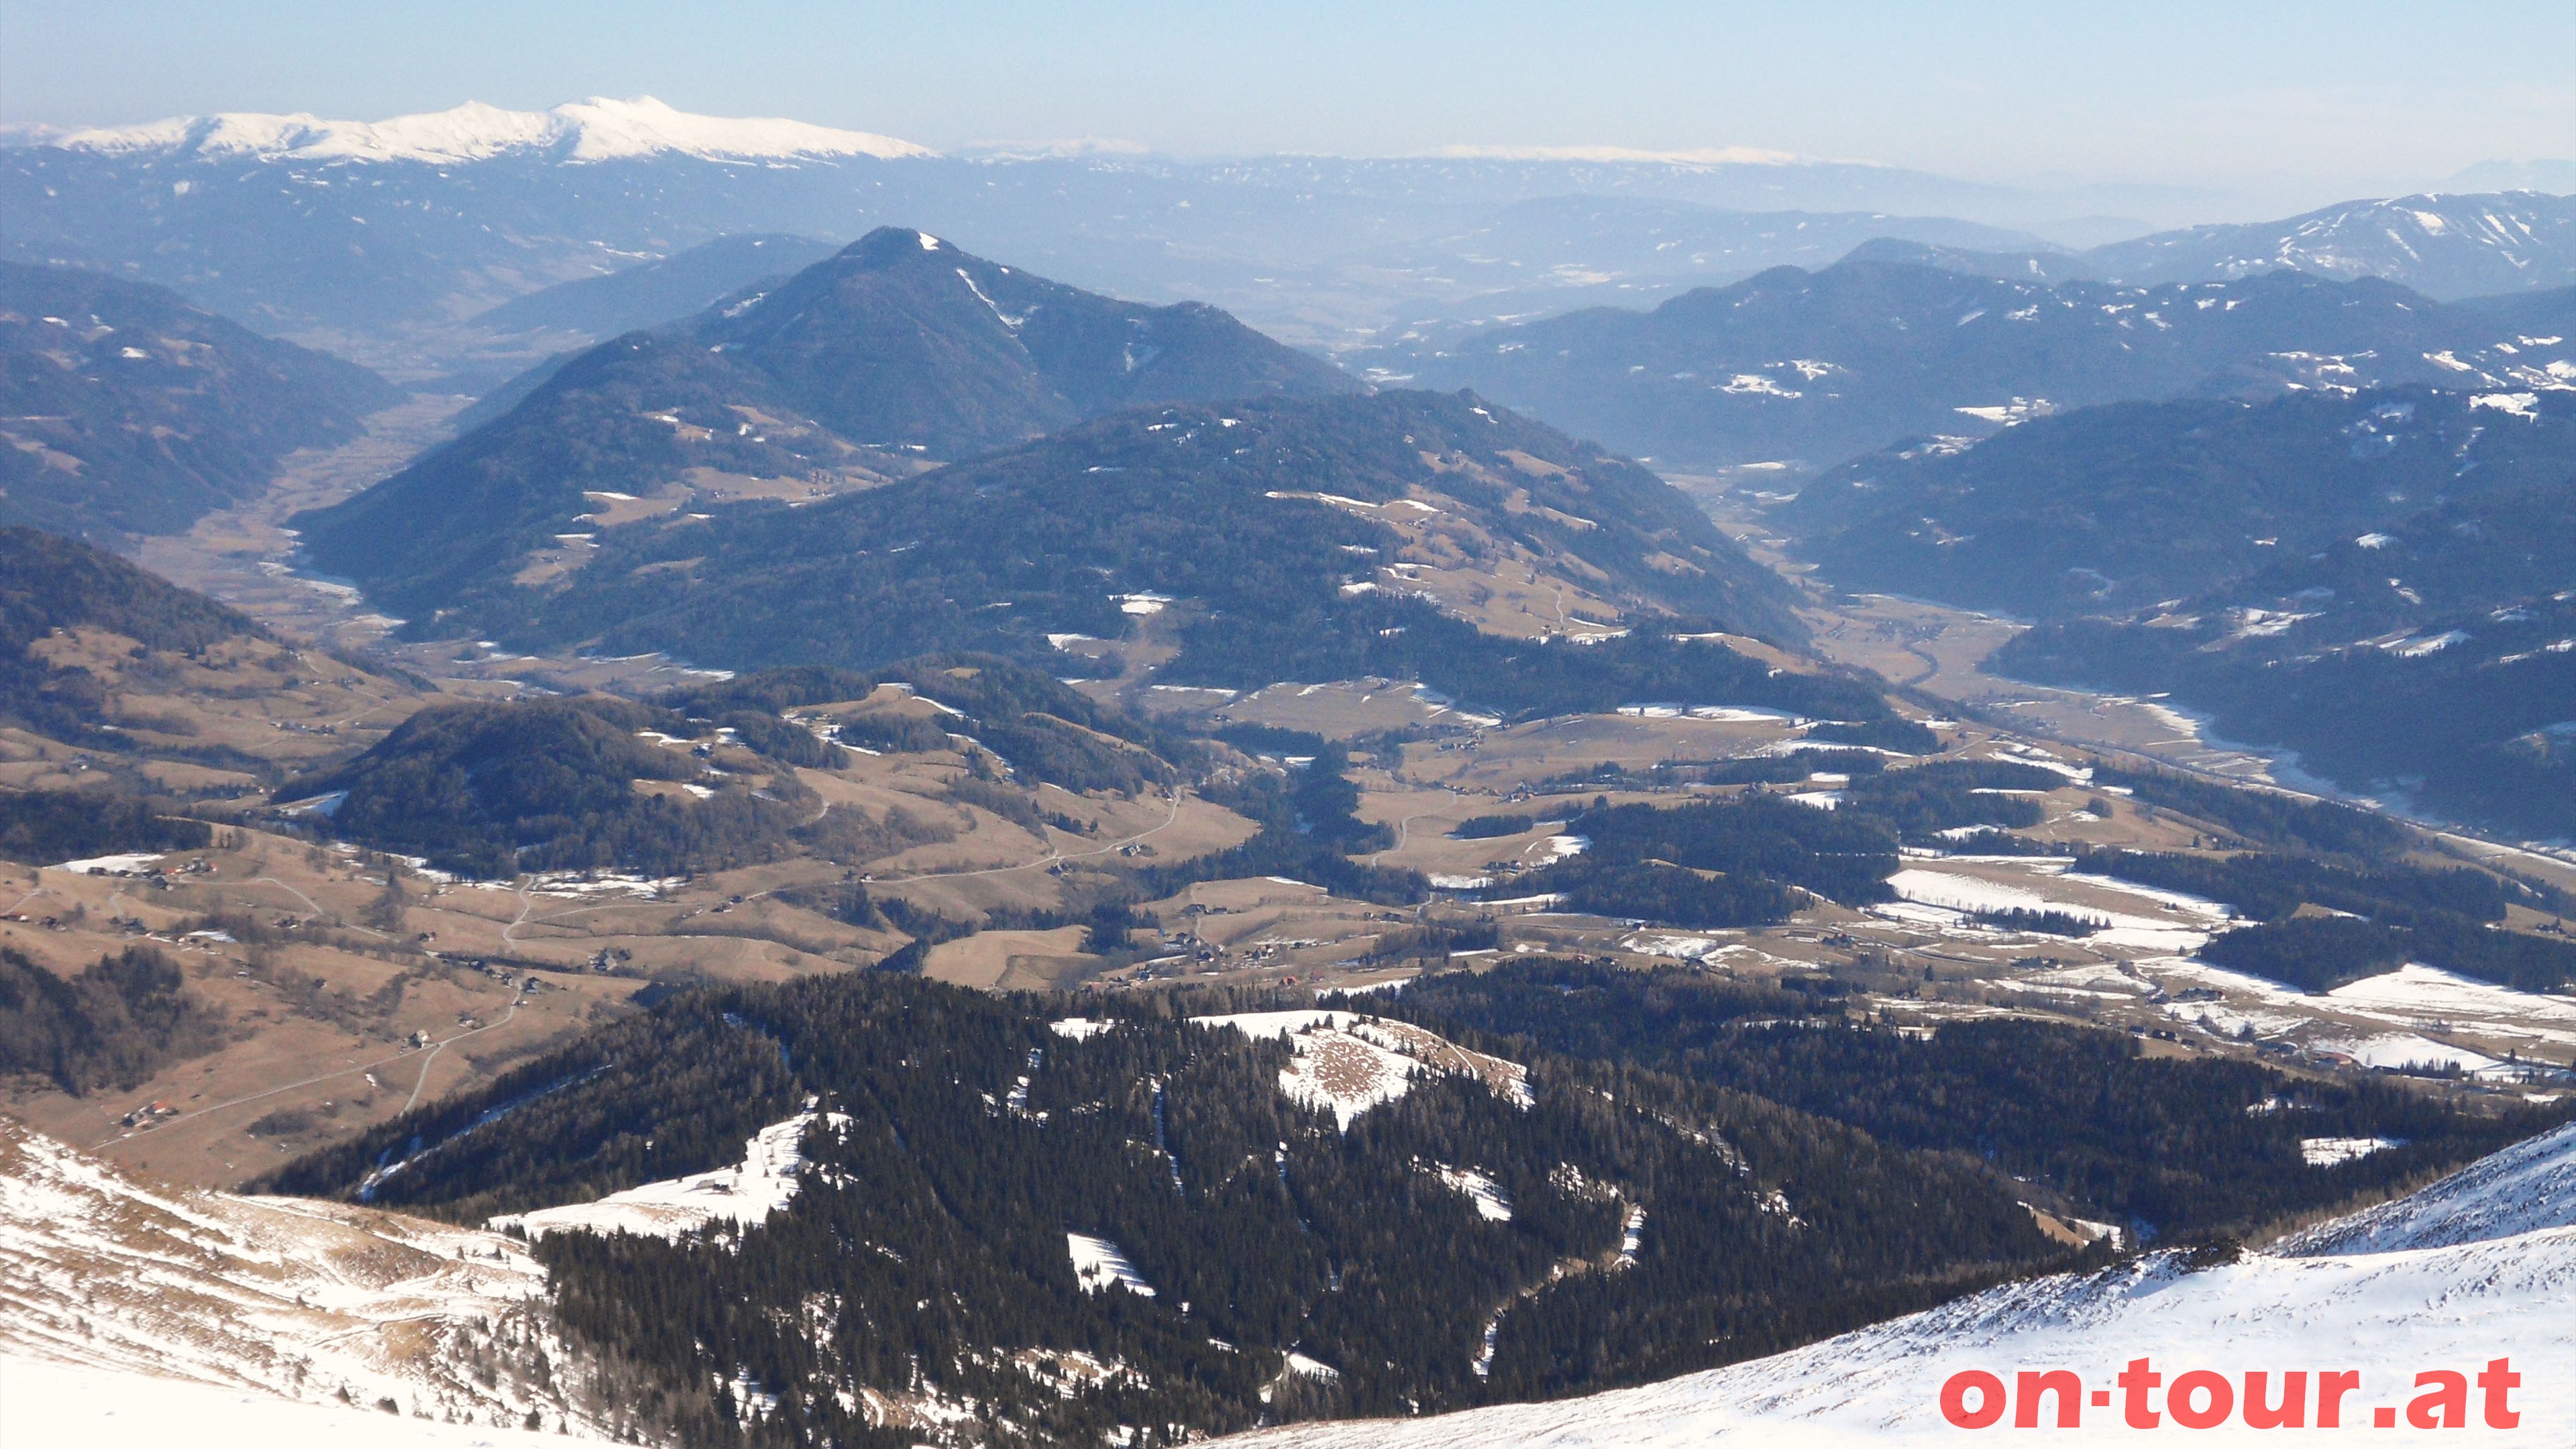 Schner Blick nach Sdosten im oberen Bereich. Links das Tal mit Oberwlz, dahinter Scheifling und am Horizont die Seetaler Alpen.